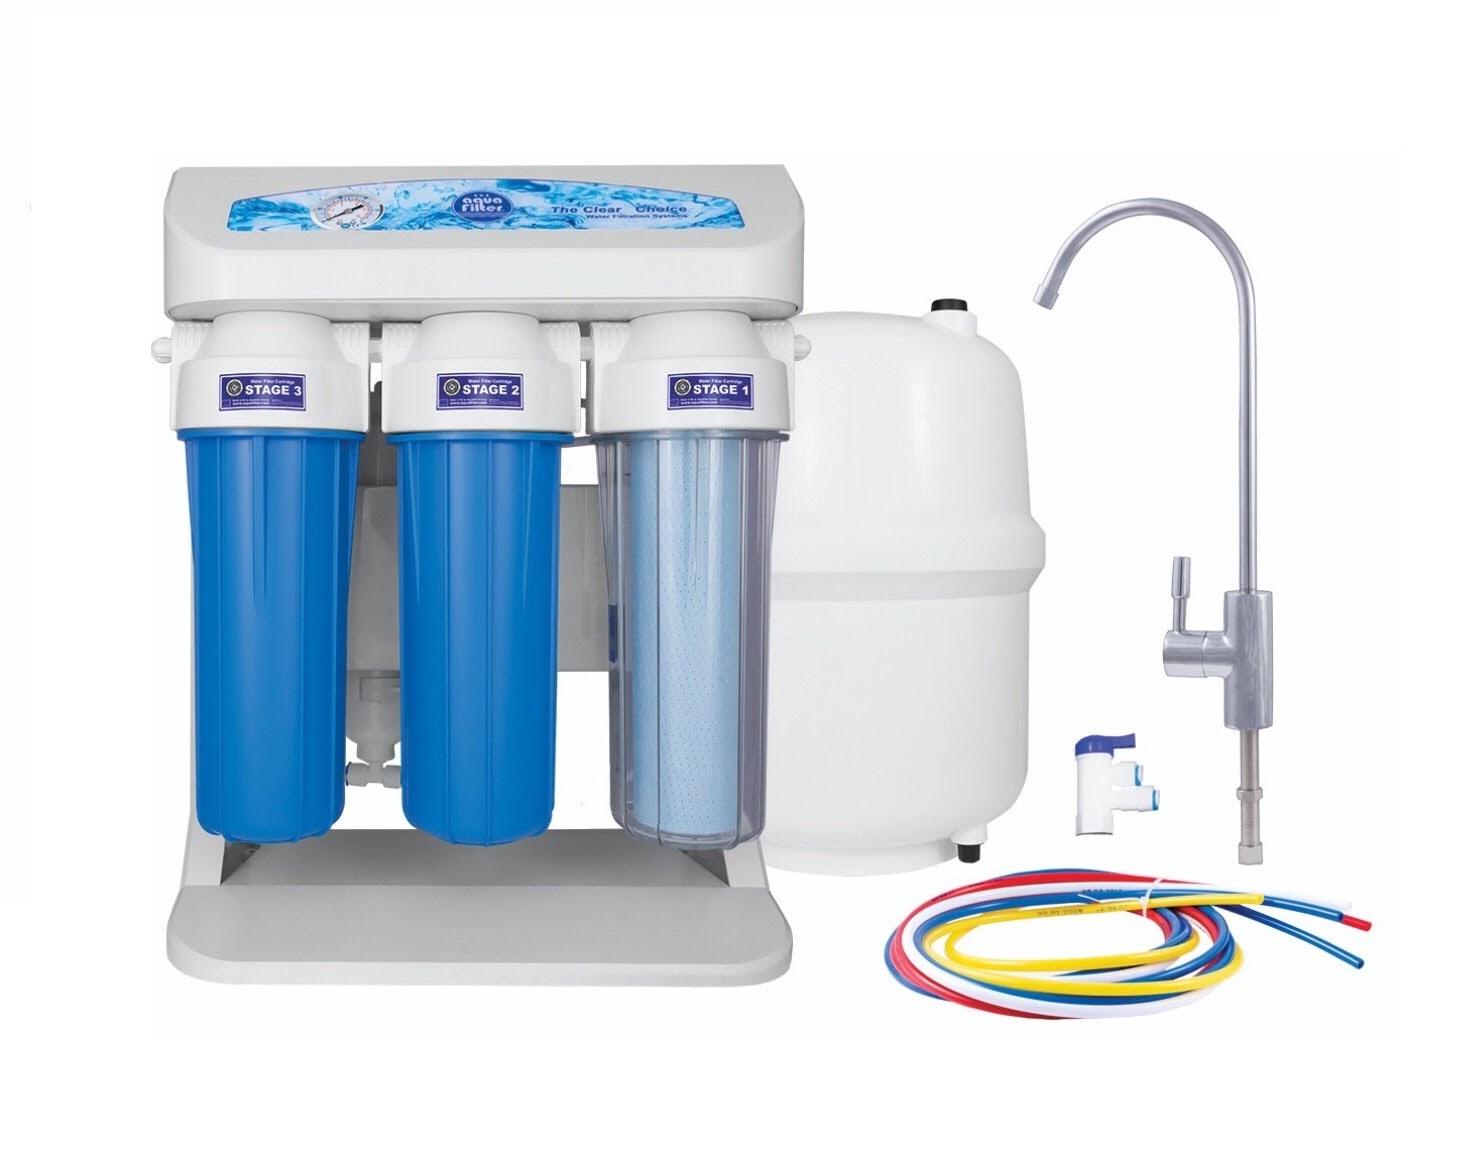 Máy lọc nước RO ion âm Elite hãng Aquafilter được người dùng vô cùng ưa chuộng